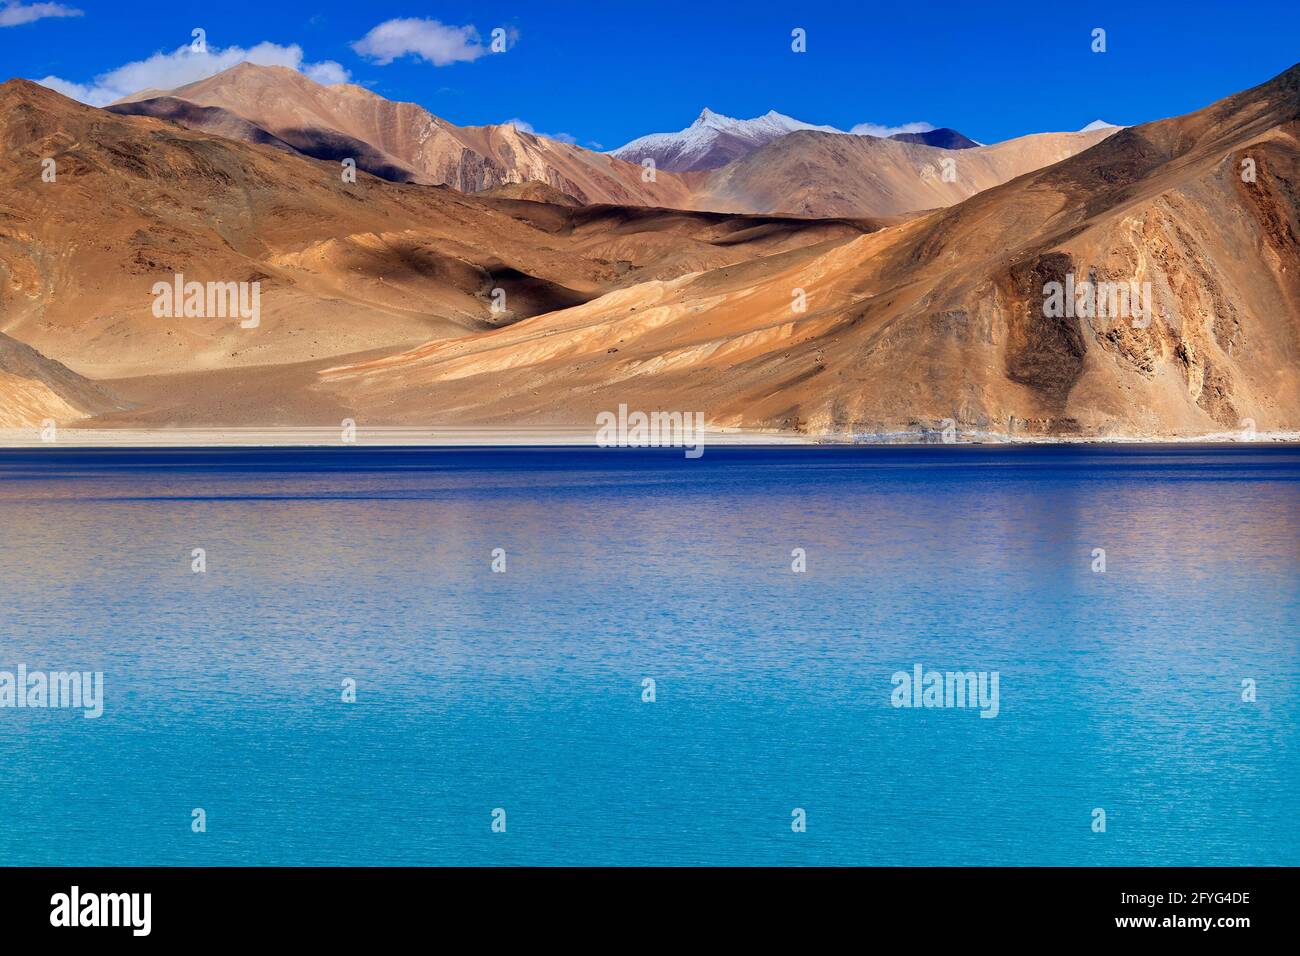 Berge und Pangong tso (See). Es ist der riesige See im vereinigten Territorium Ladakh, Indien, bei Indien erstreckt sich die chinesische Grenze zu Tibet. Stockfoto